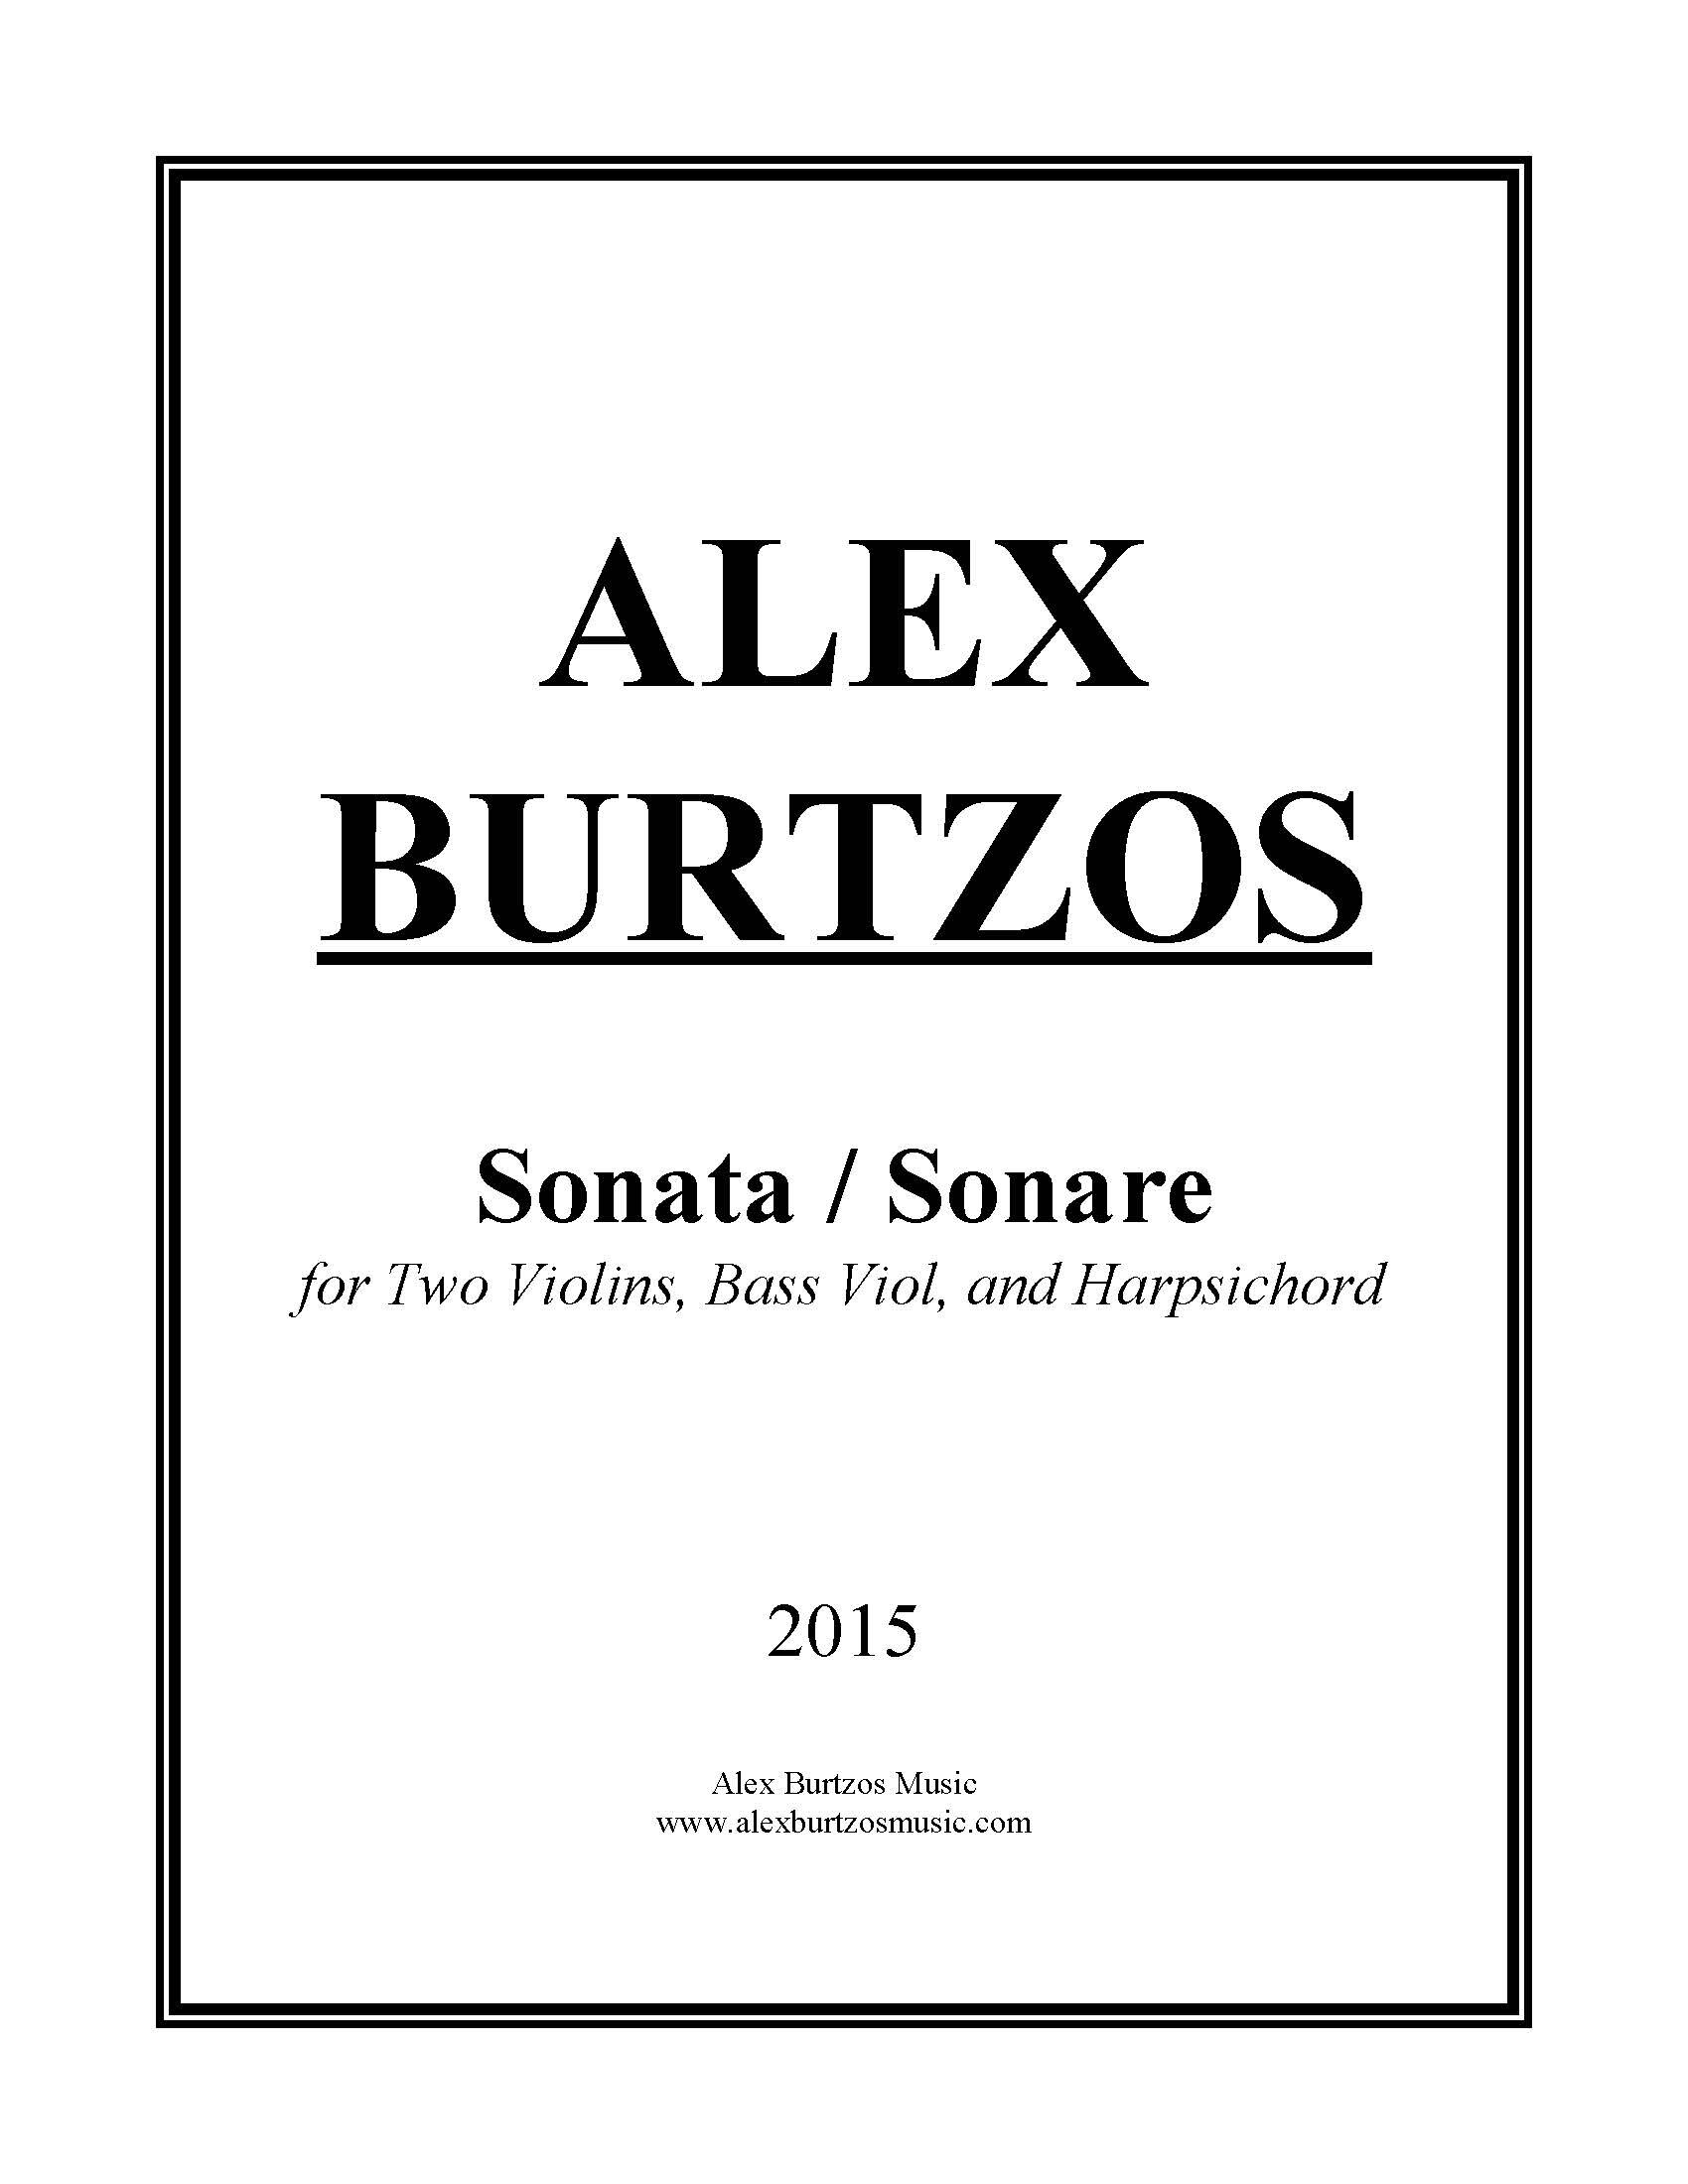 Sonata Sonare - Complete Score_Page_01.jpg